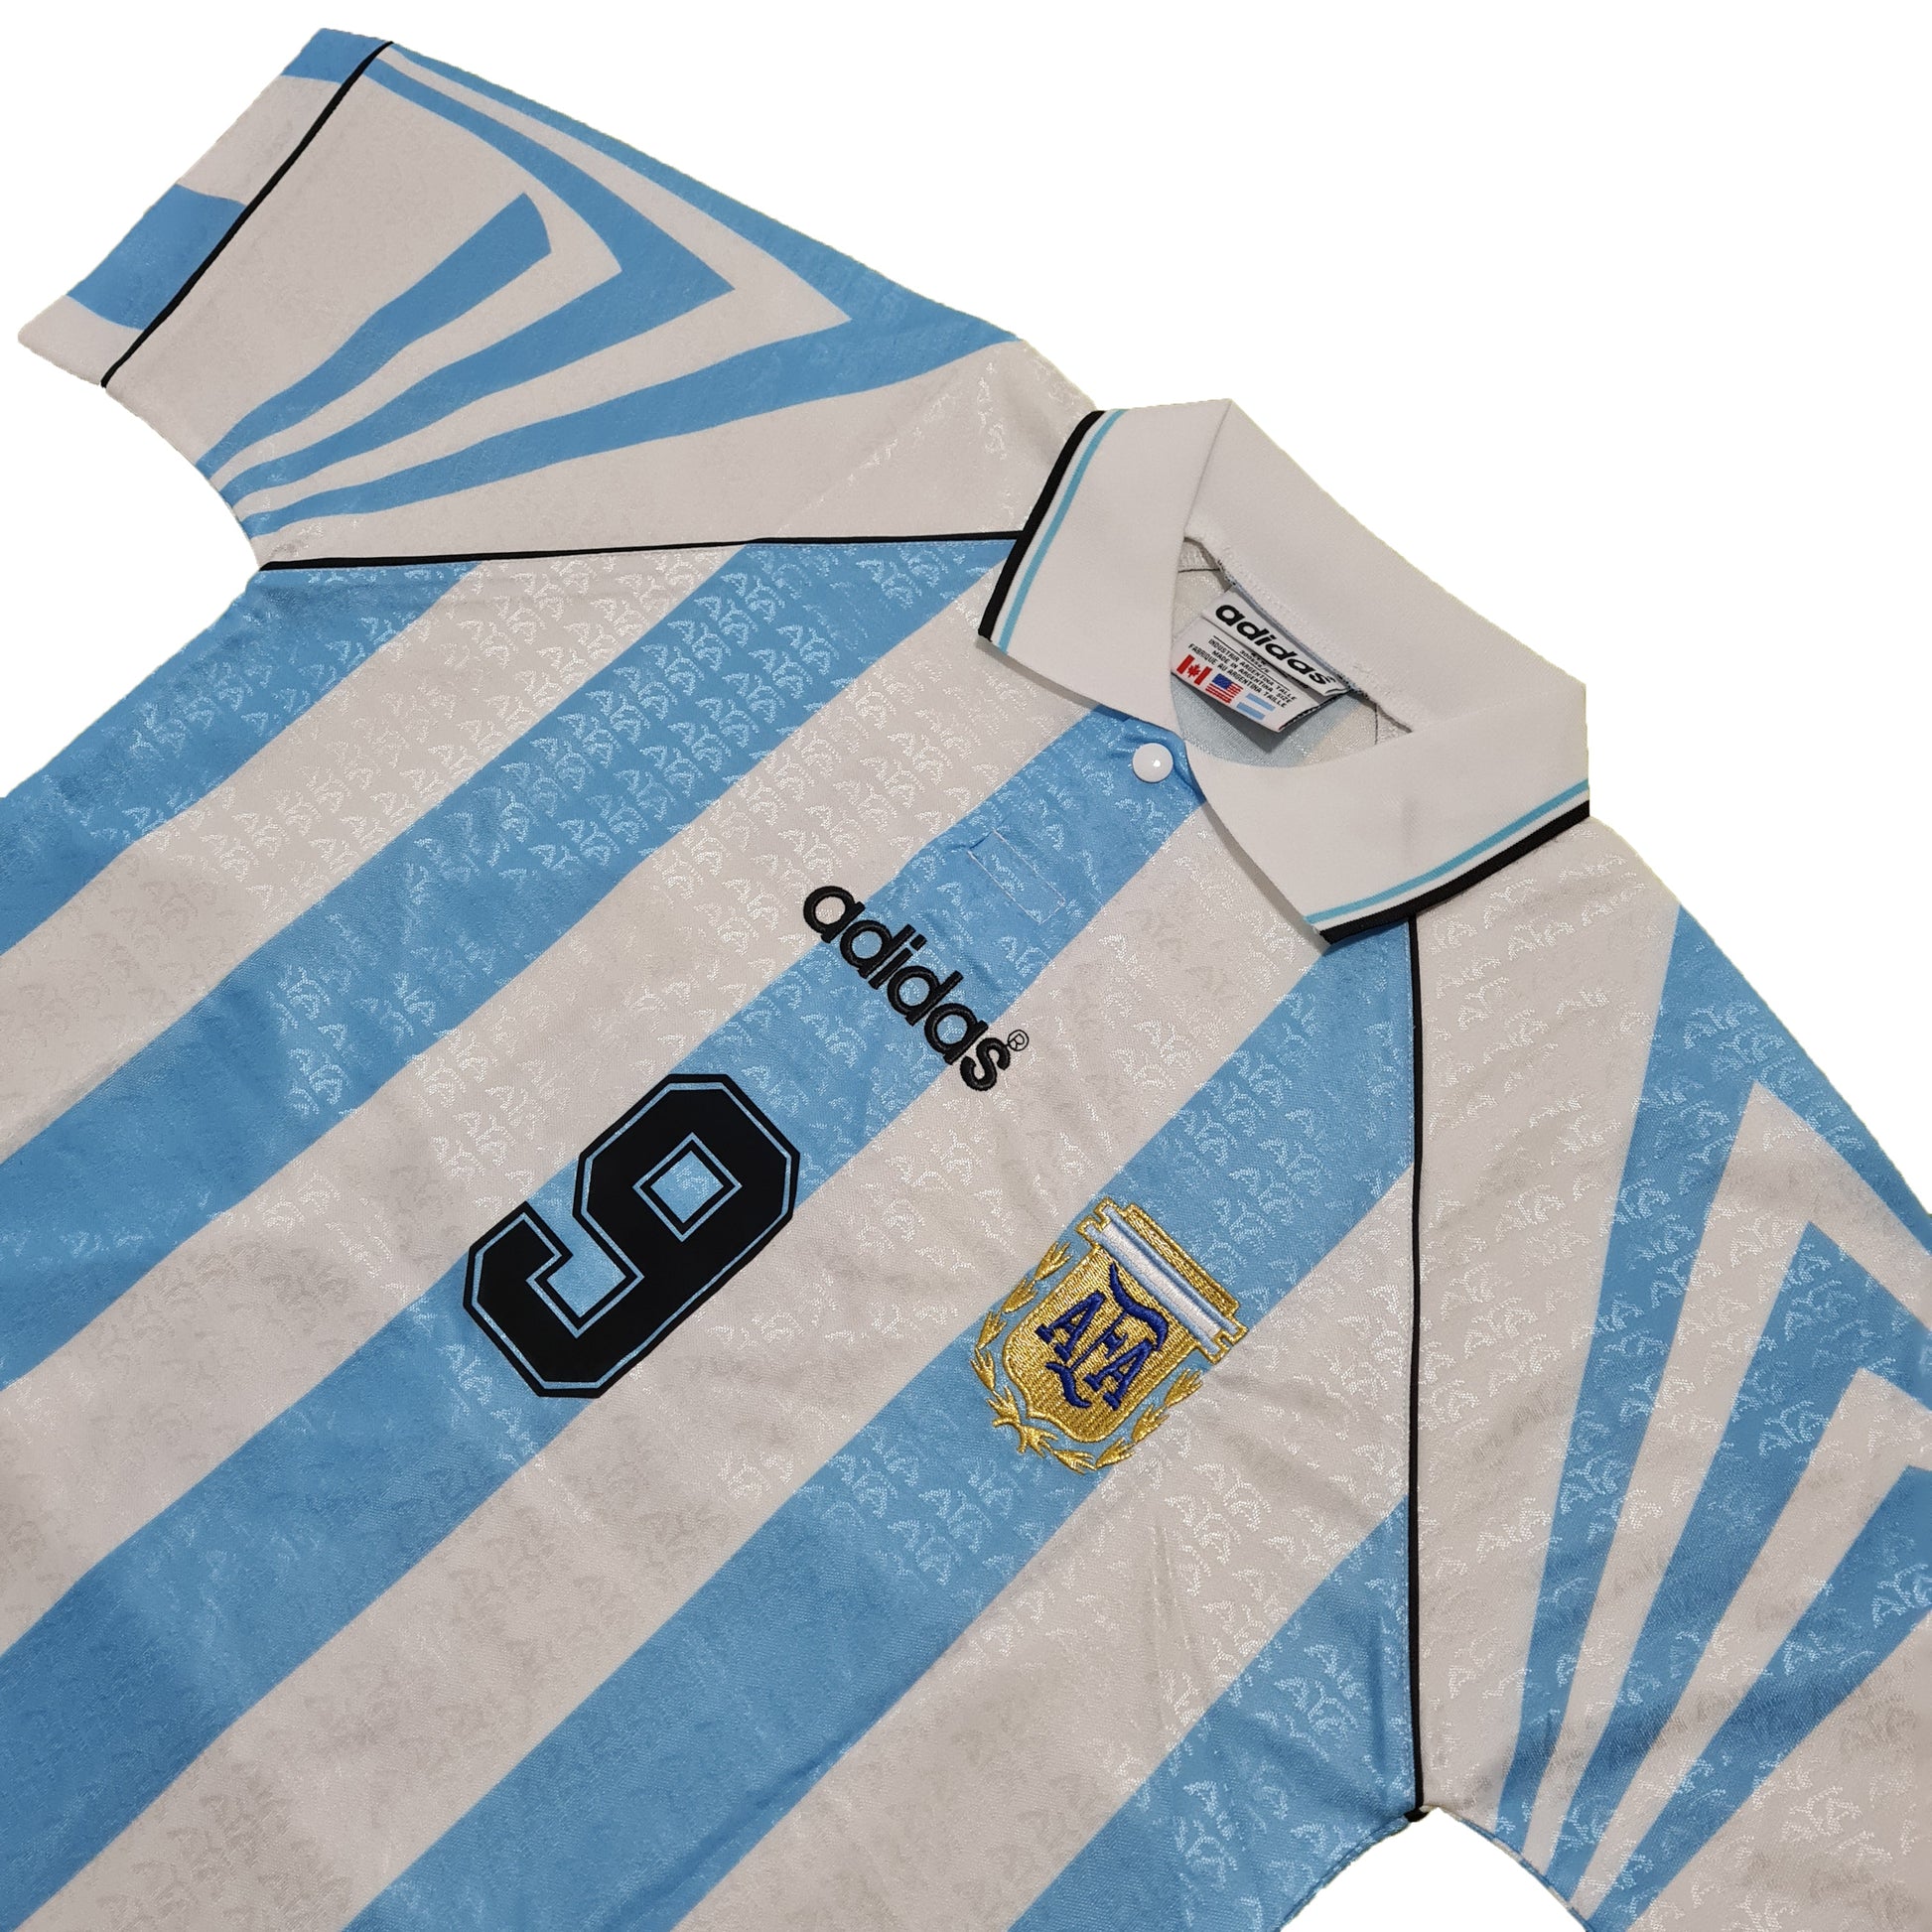 Argentina Titular 1996/97 ✈️ - Thunder Internacional